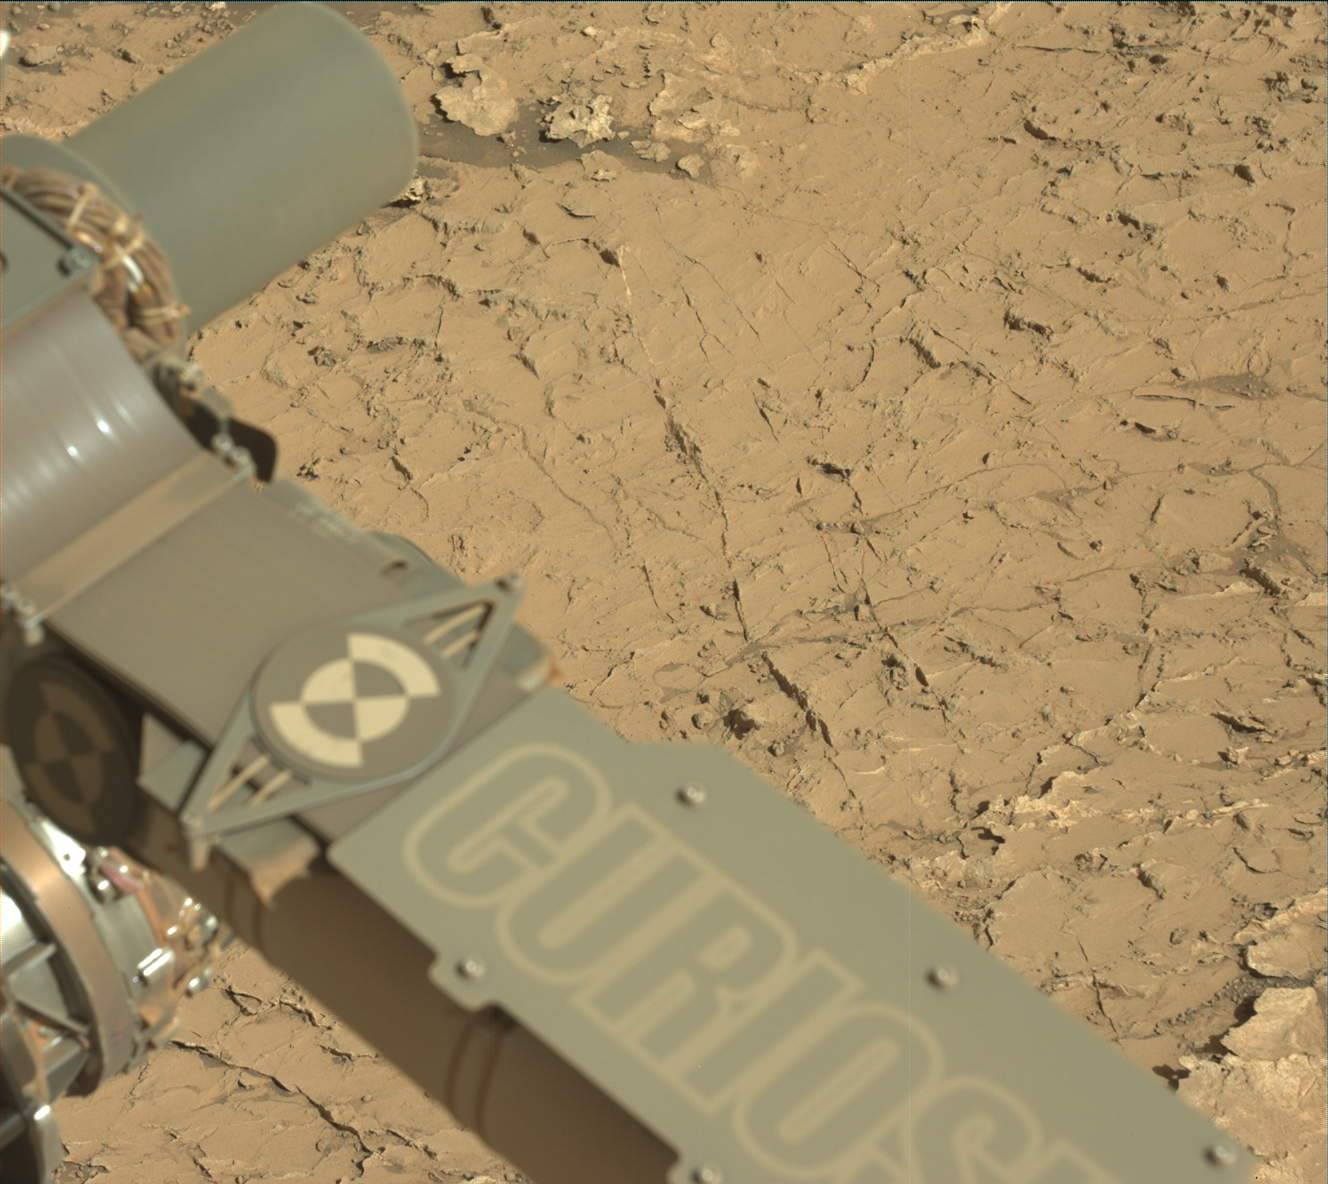 Polígonos detrás del brazo robótico de Curiosity en Marte el día 3154 de la misión de la sonda